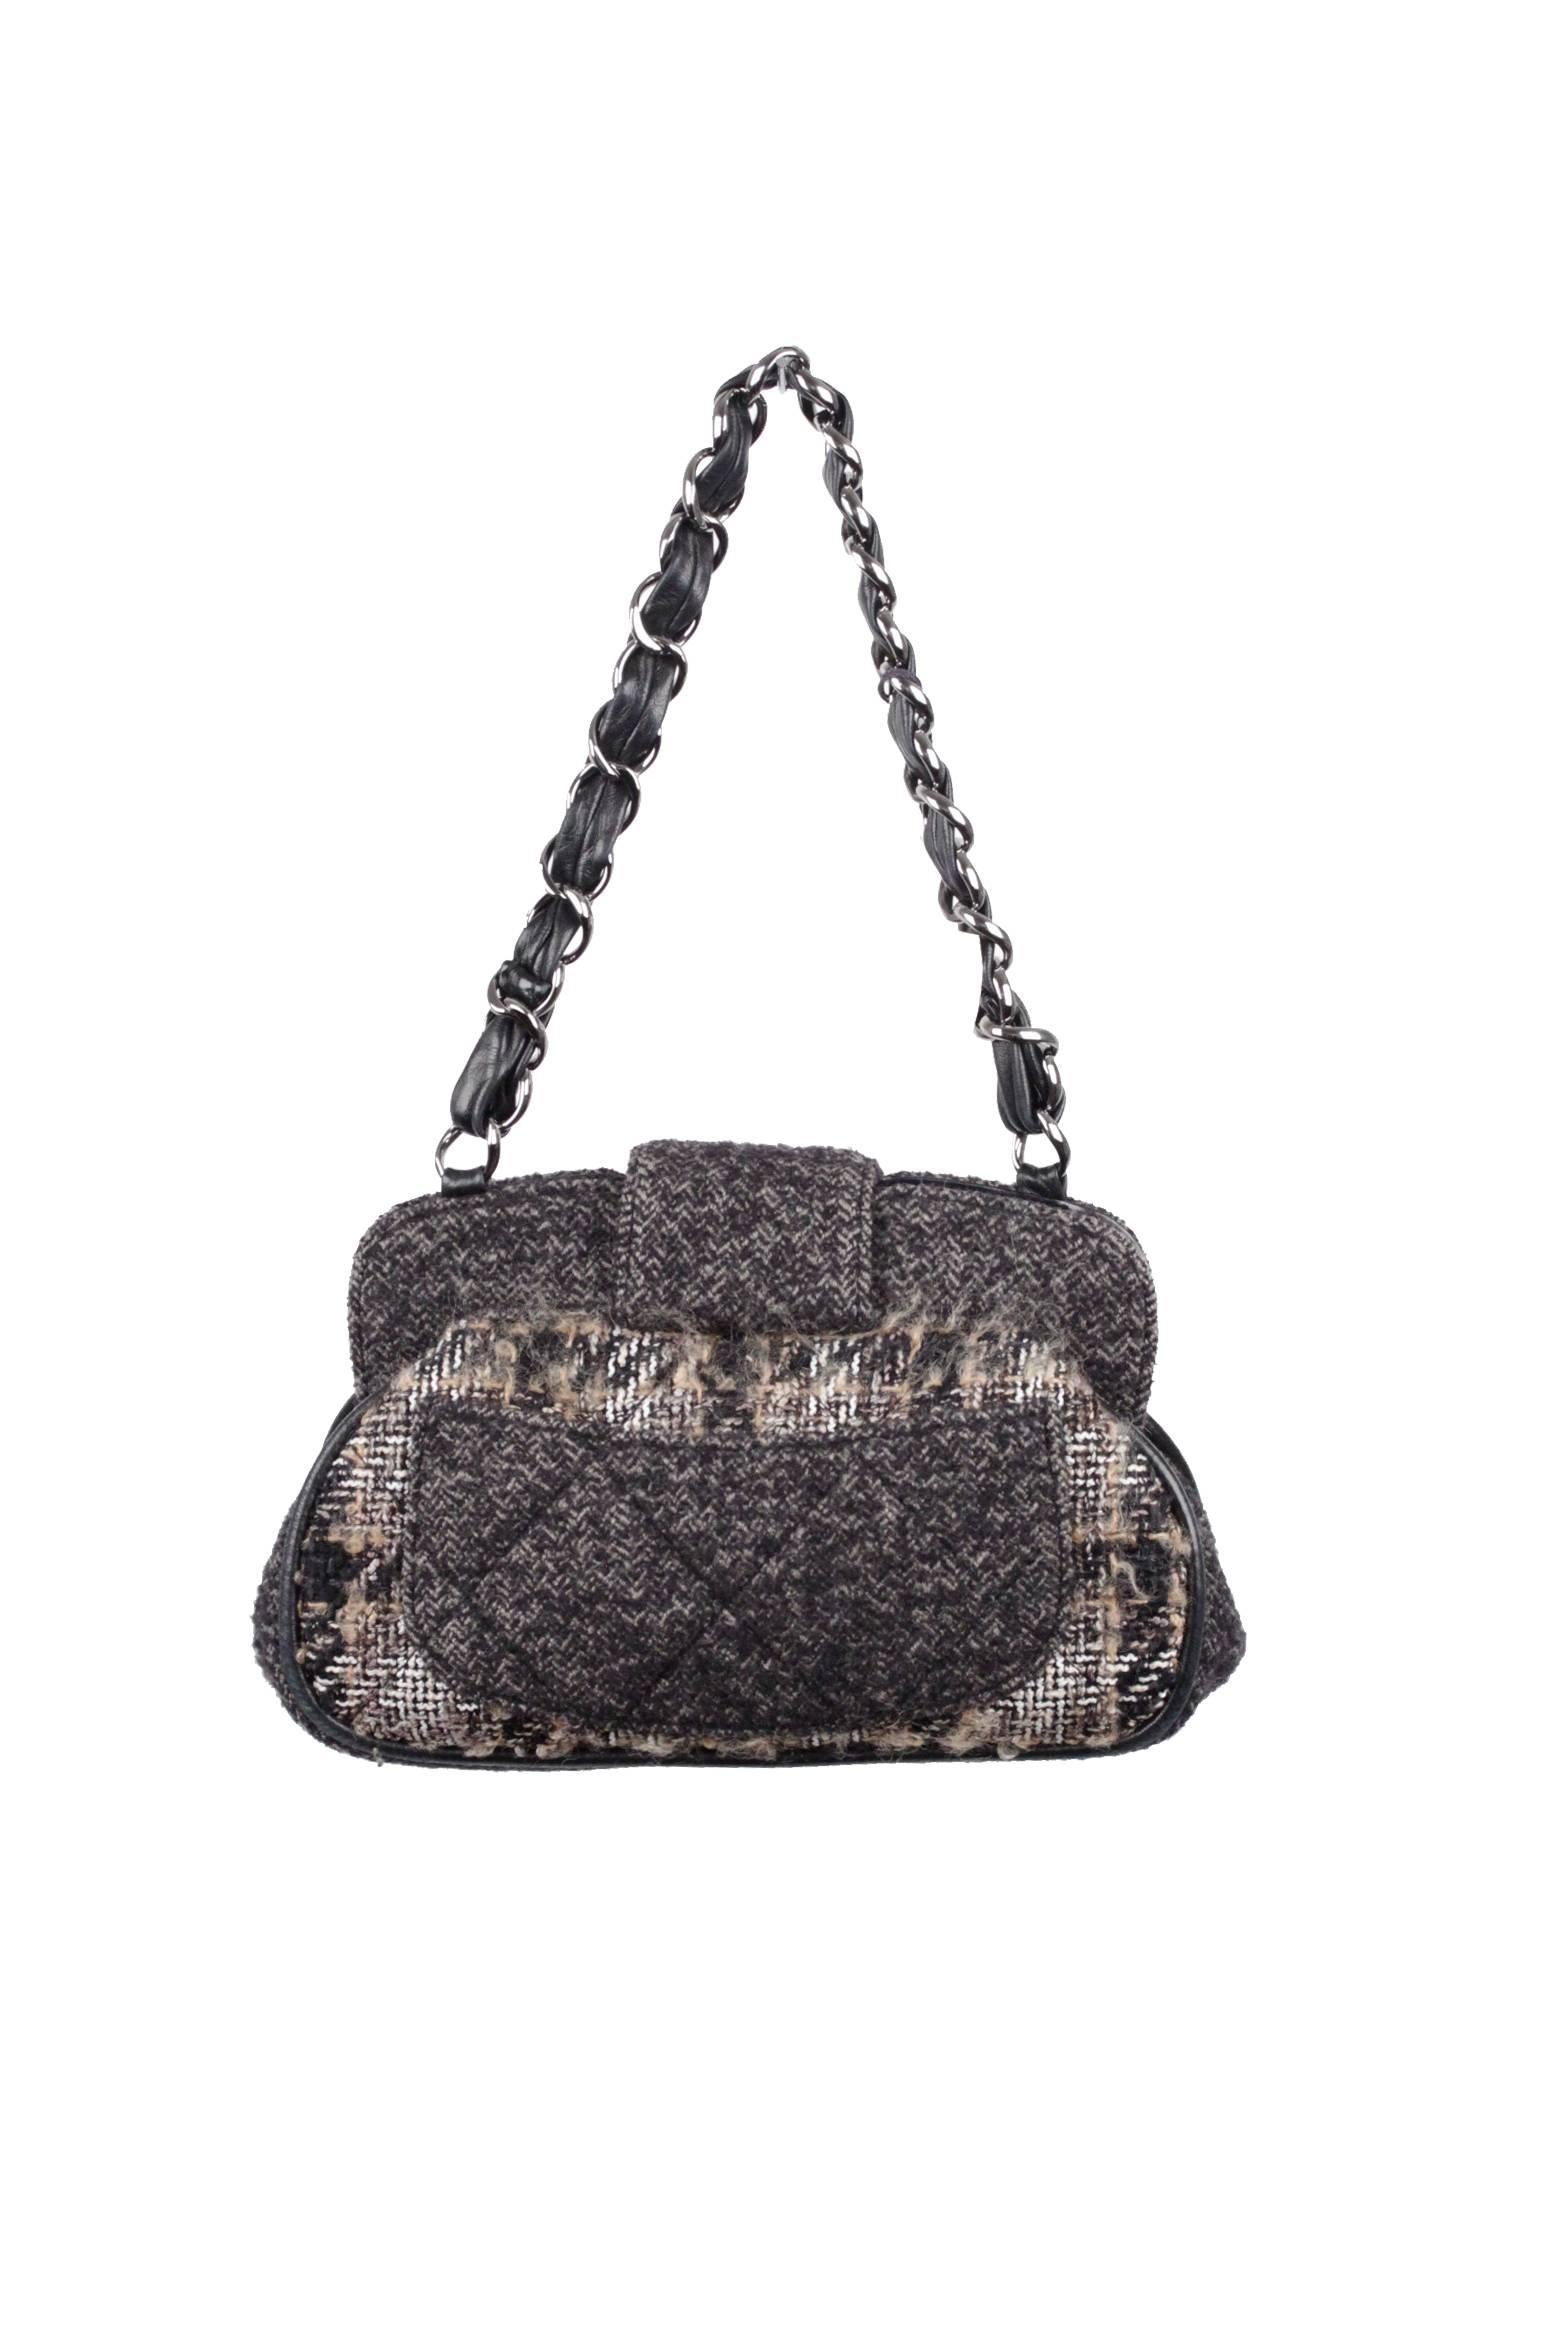 CHANEL Black Tweed FRAME BAG Shoulder Bag HANDBAG 3